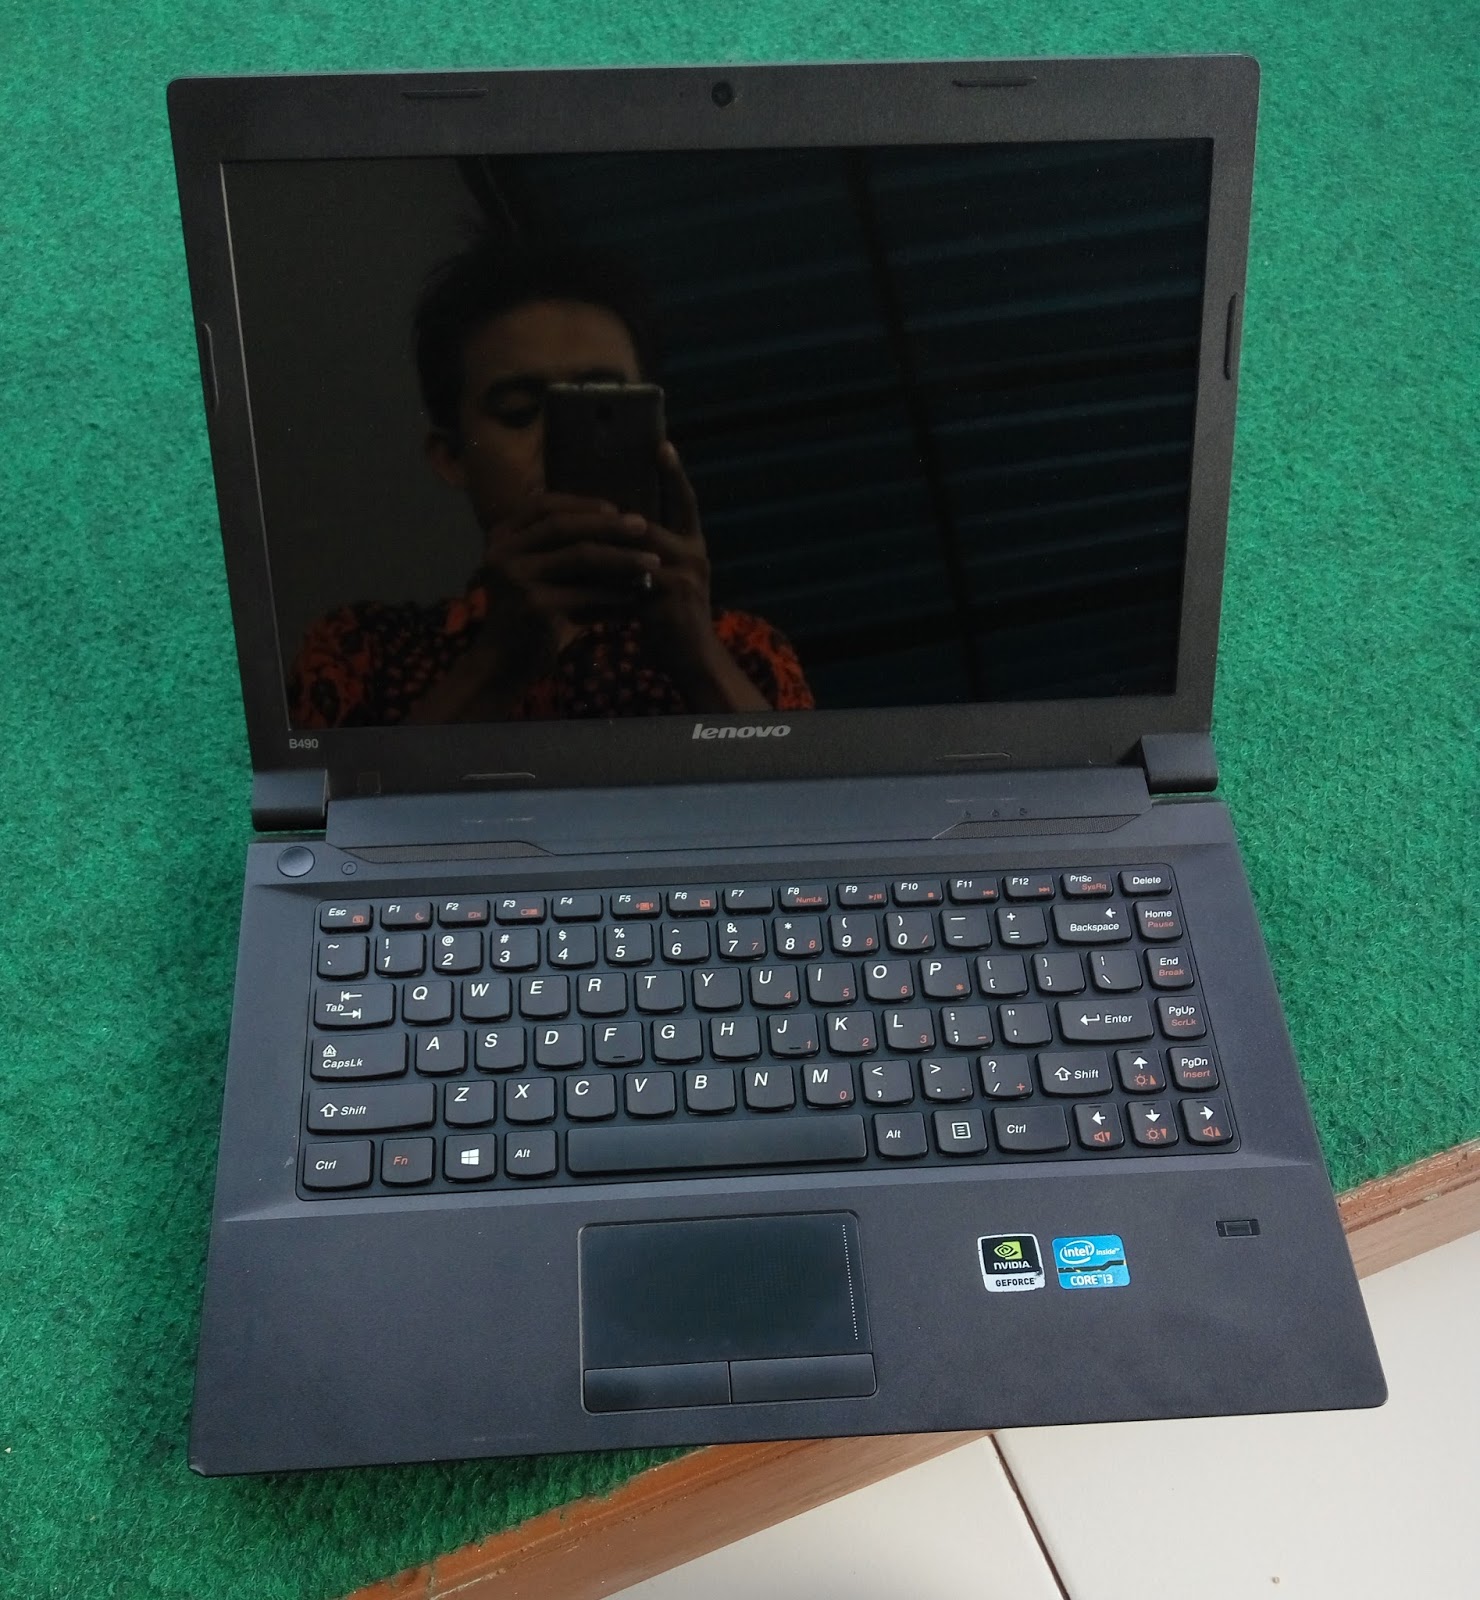 Jual Laptop Gaming Lenovo B490 core i3 Nvidia 610M 